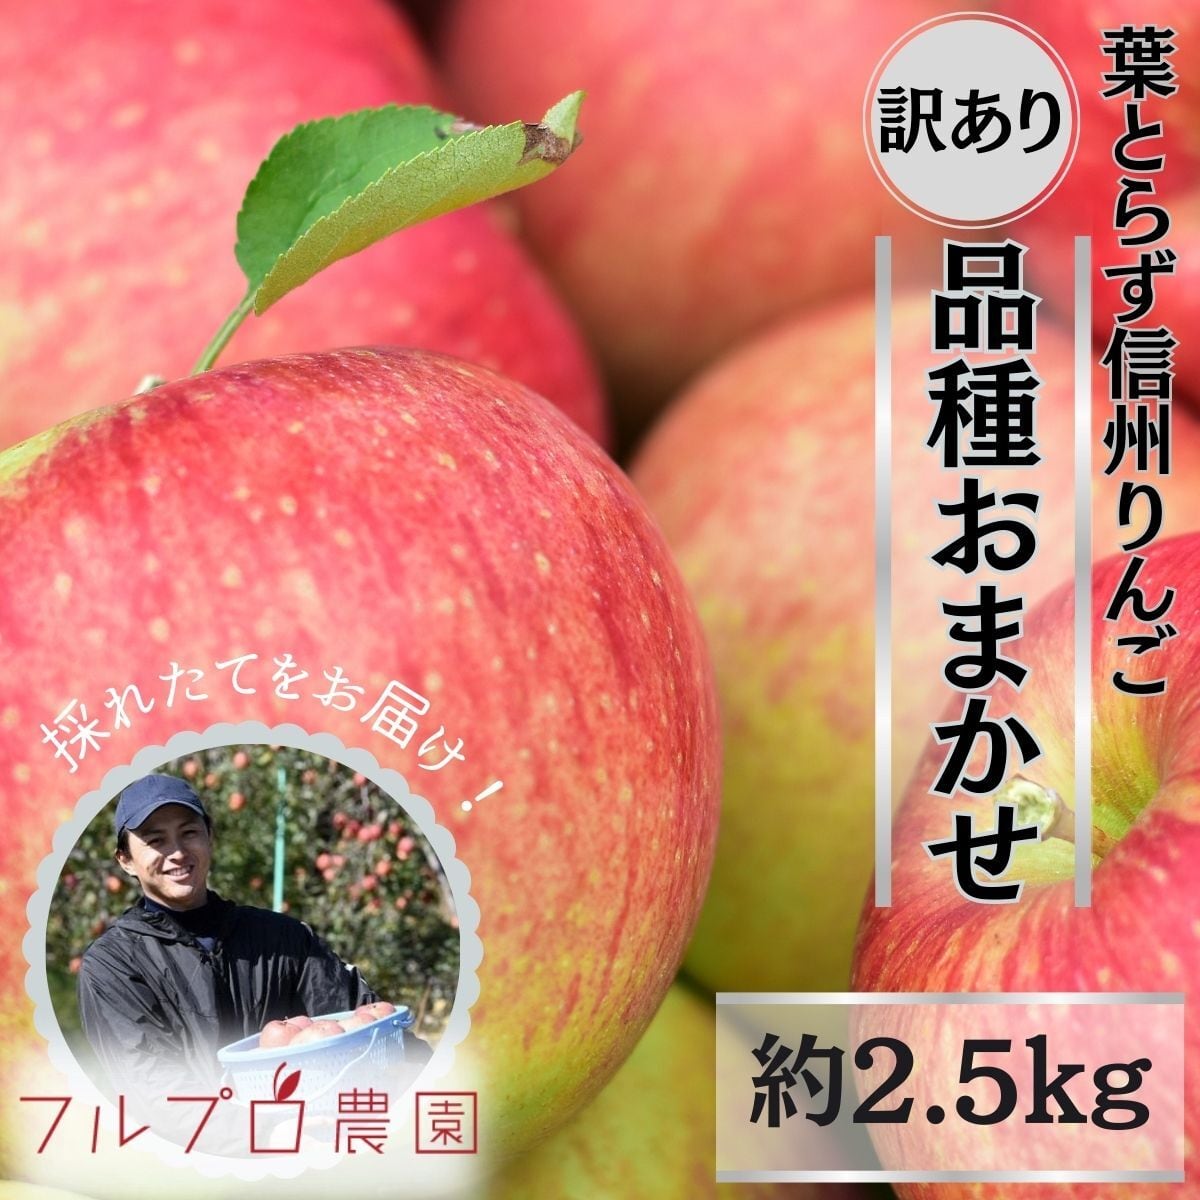 旬のおまかせ】葉とらずりんご(無選別) 訳あり 約2.5kg(7-16玉)1~3種類 #NAX0B025 frupronouen